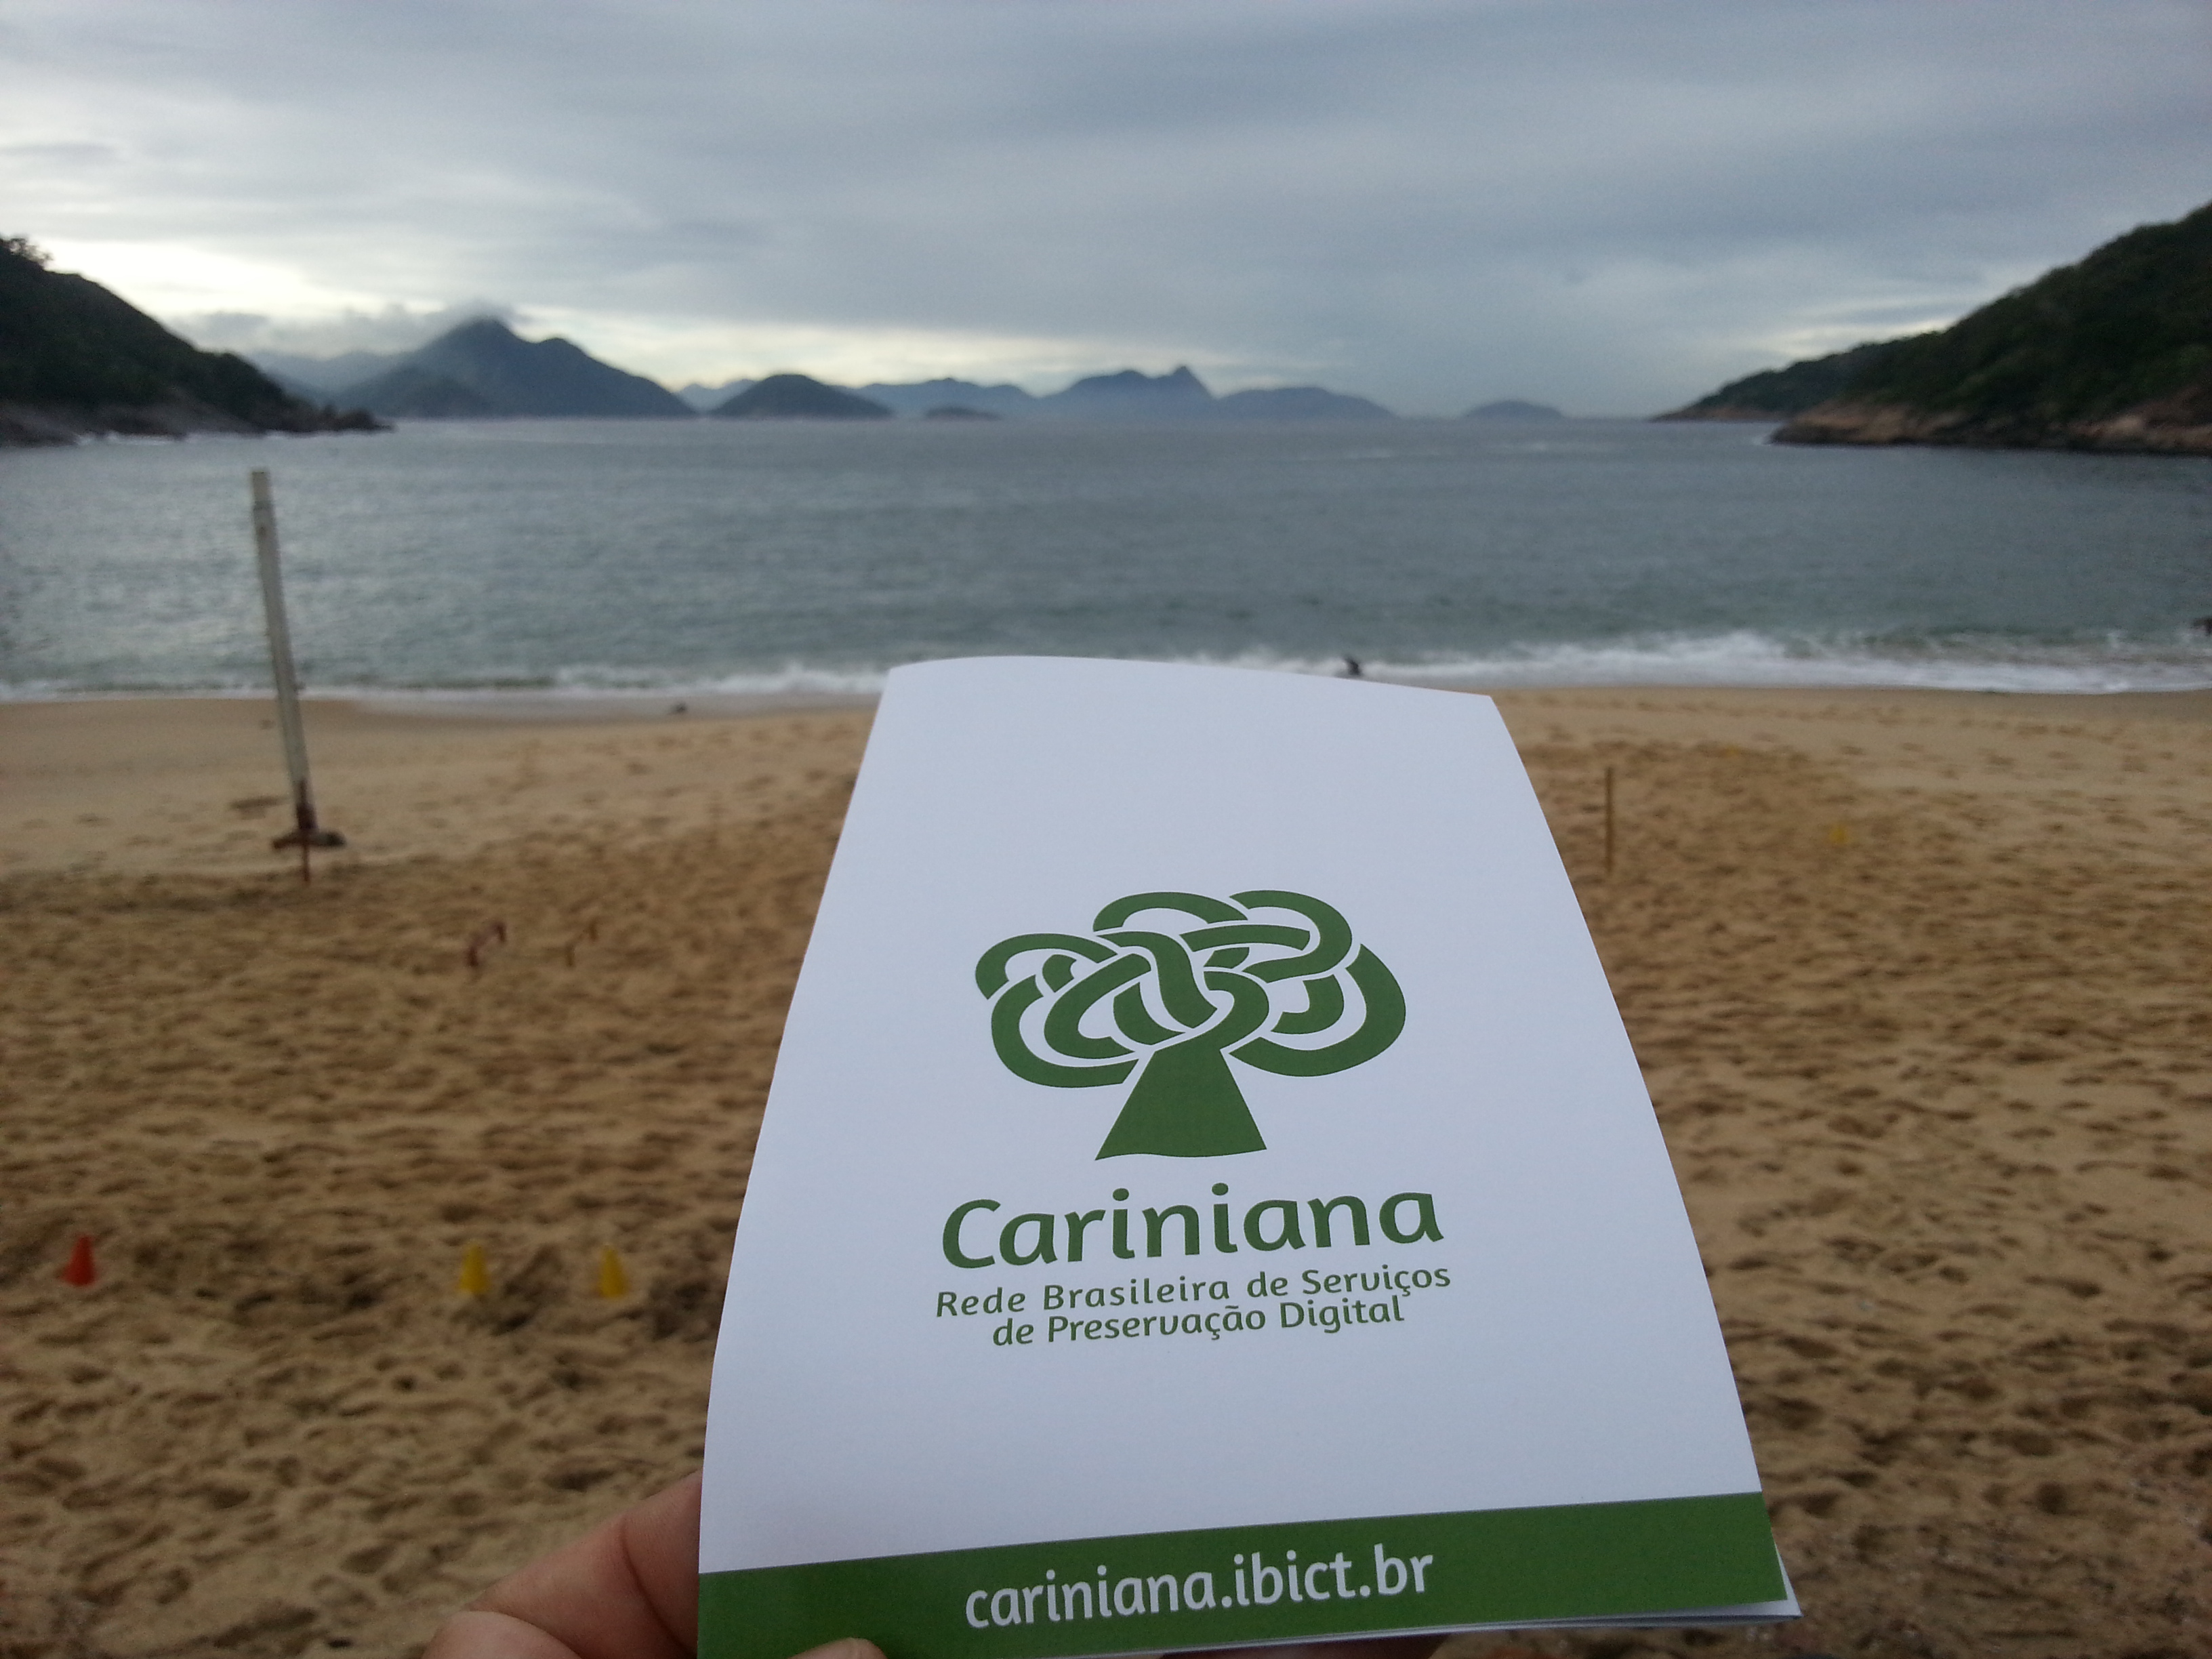 Cariniana no Rio